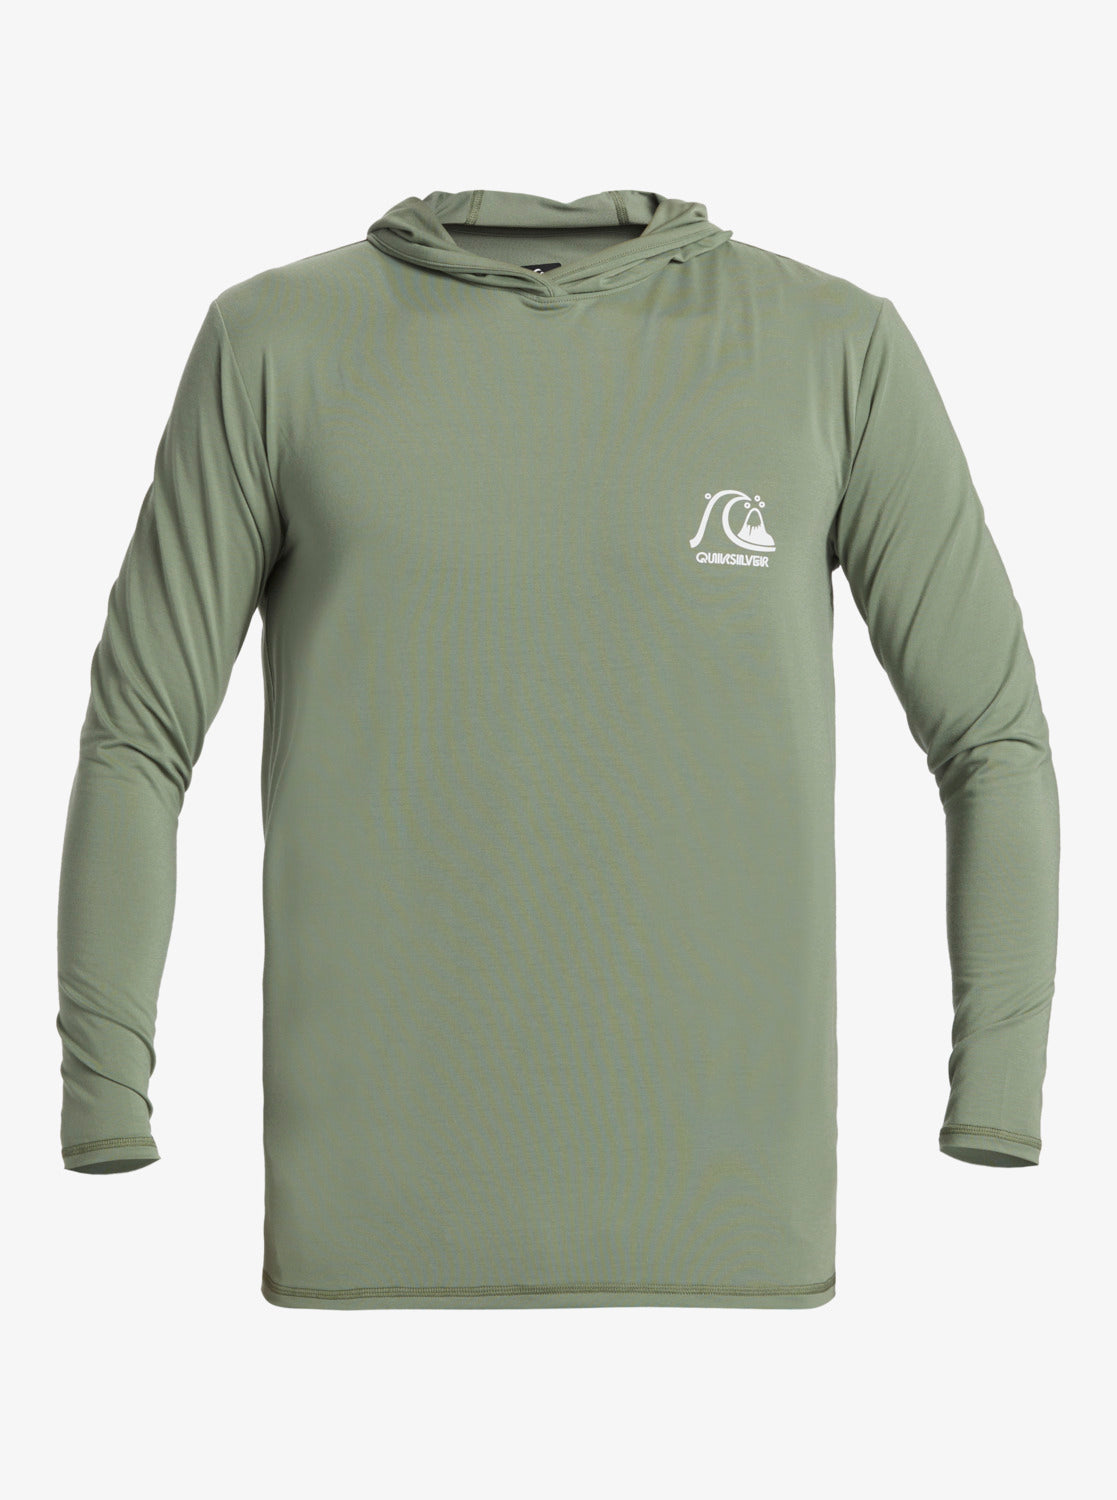 Urban Dredge - Hooded Long Sleeve Surf T-Shirt for Men